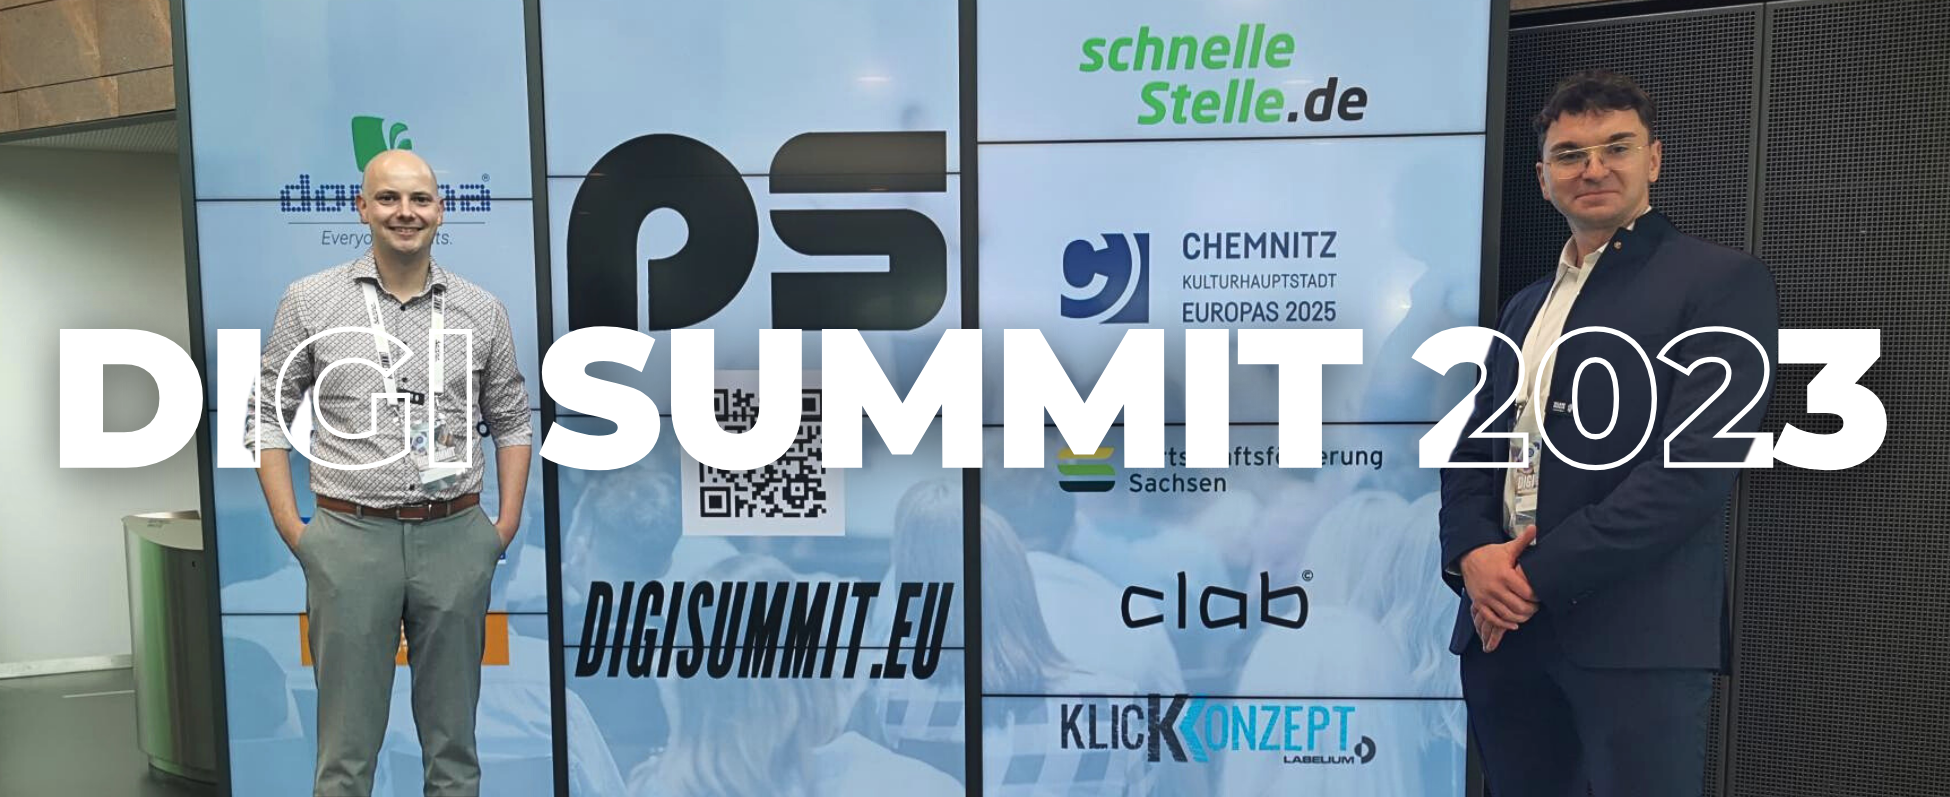 Hattrick in Chemnitz: Der Digi Summit geht in die dritte Runde